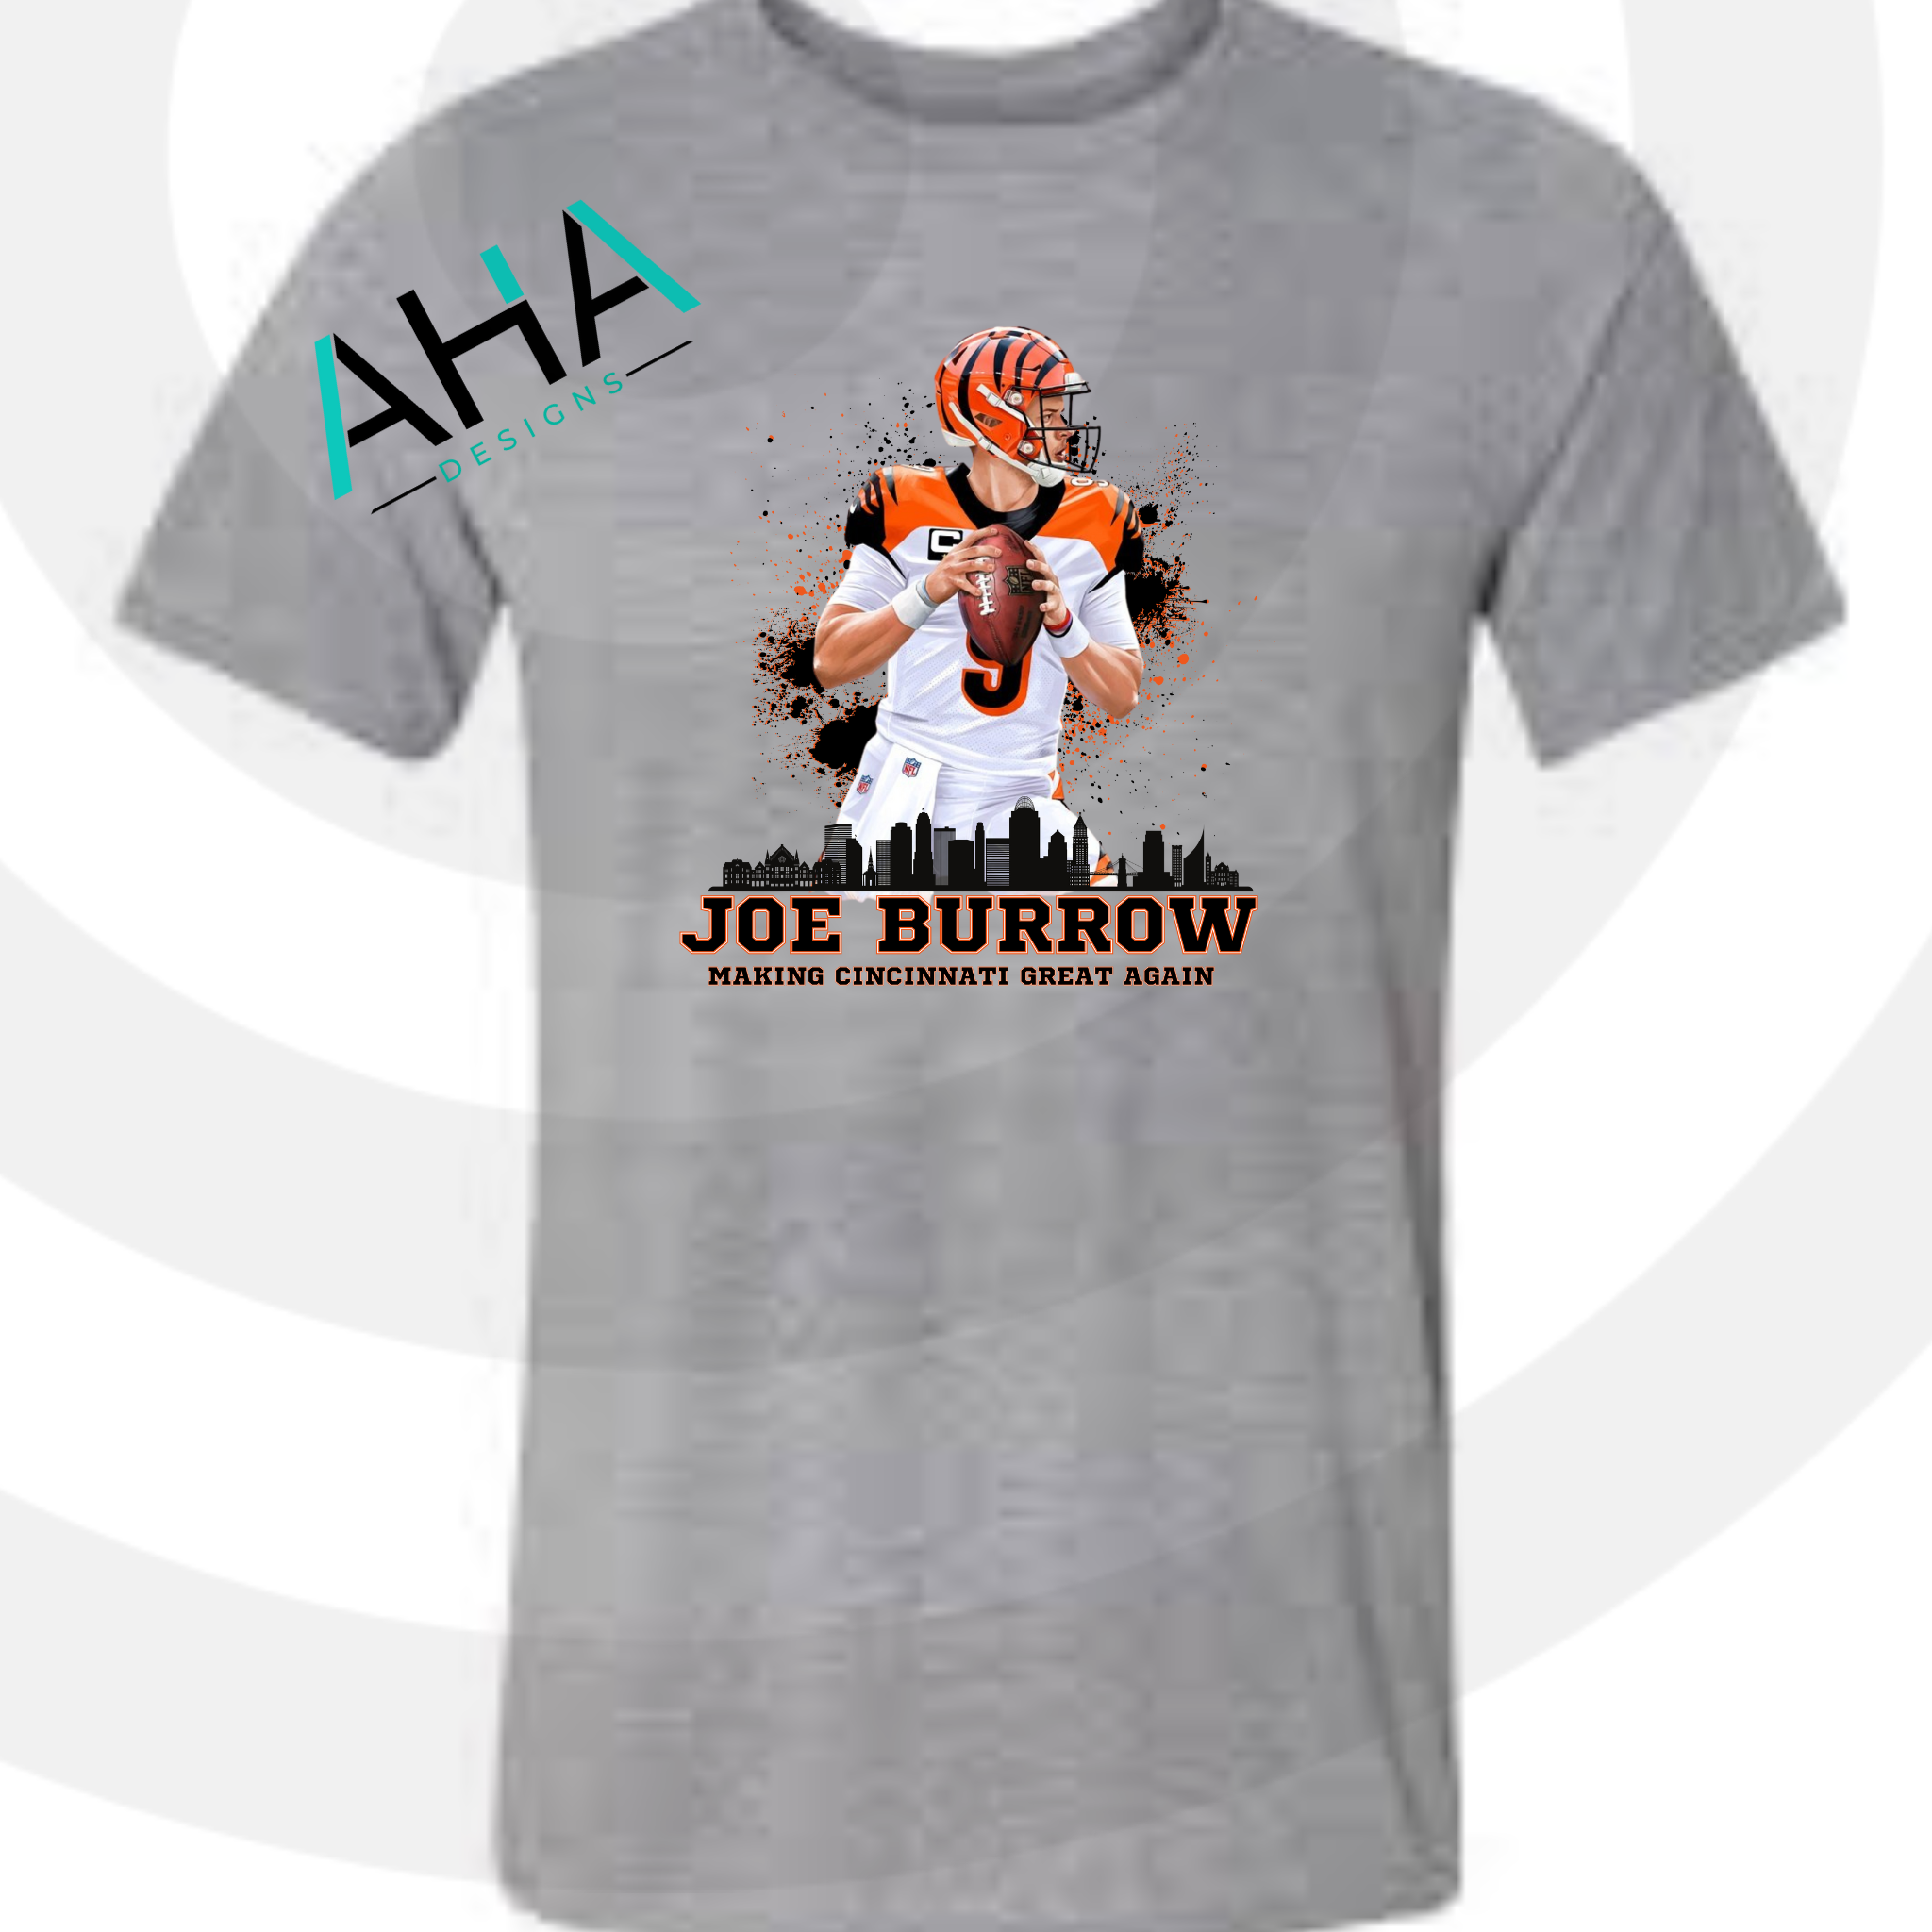 Joe Burrow Making Cincinnati Great Again T-shirt